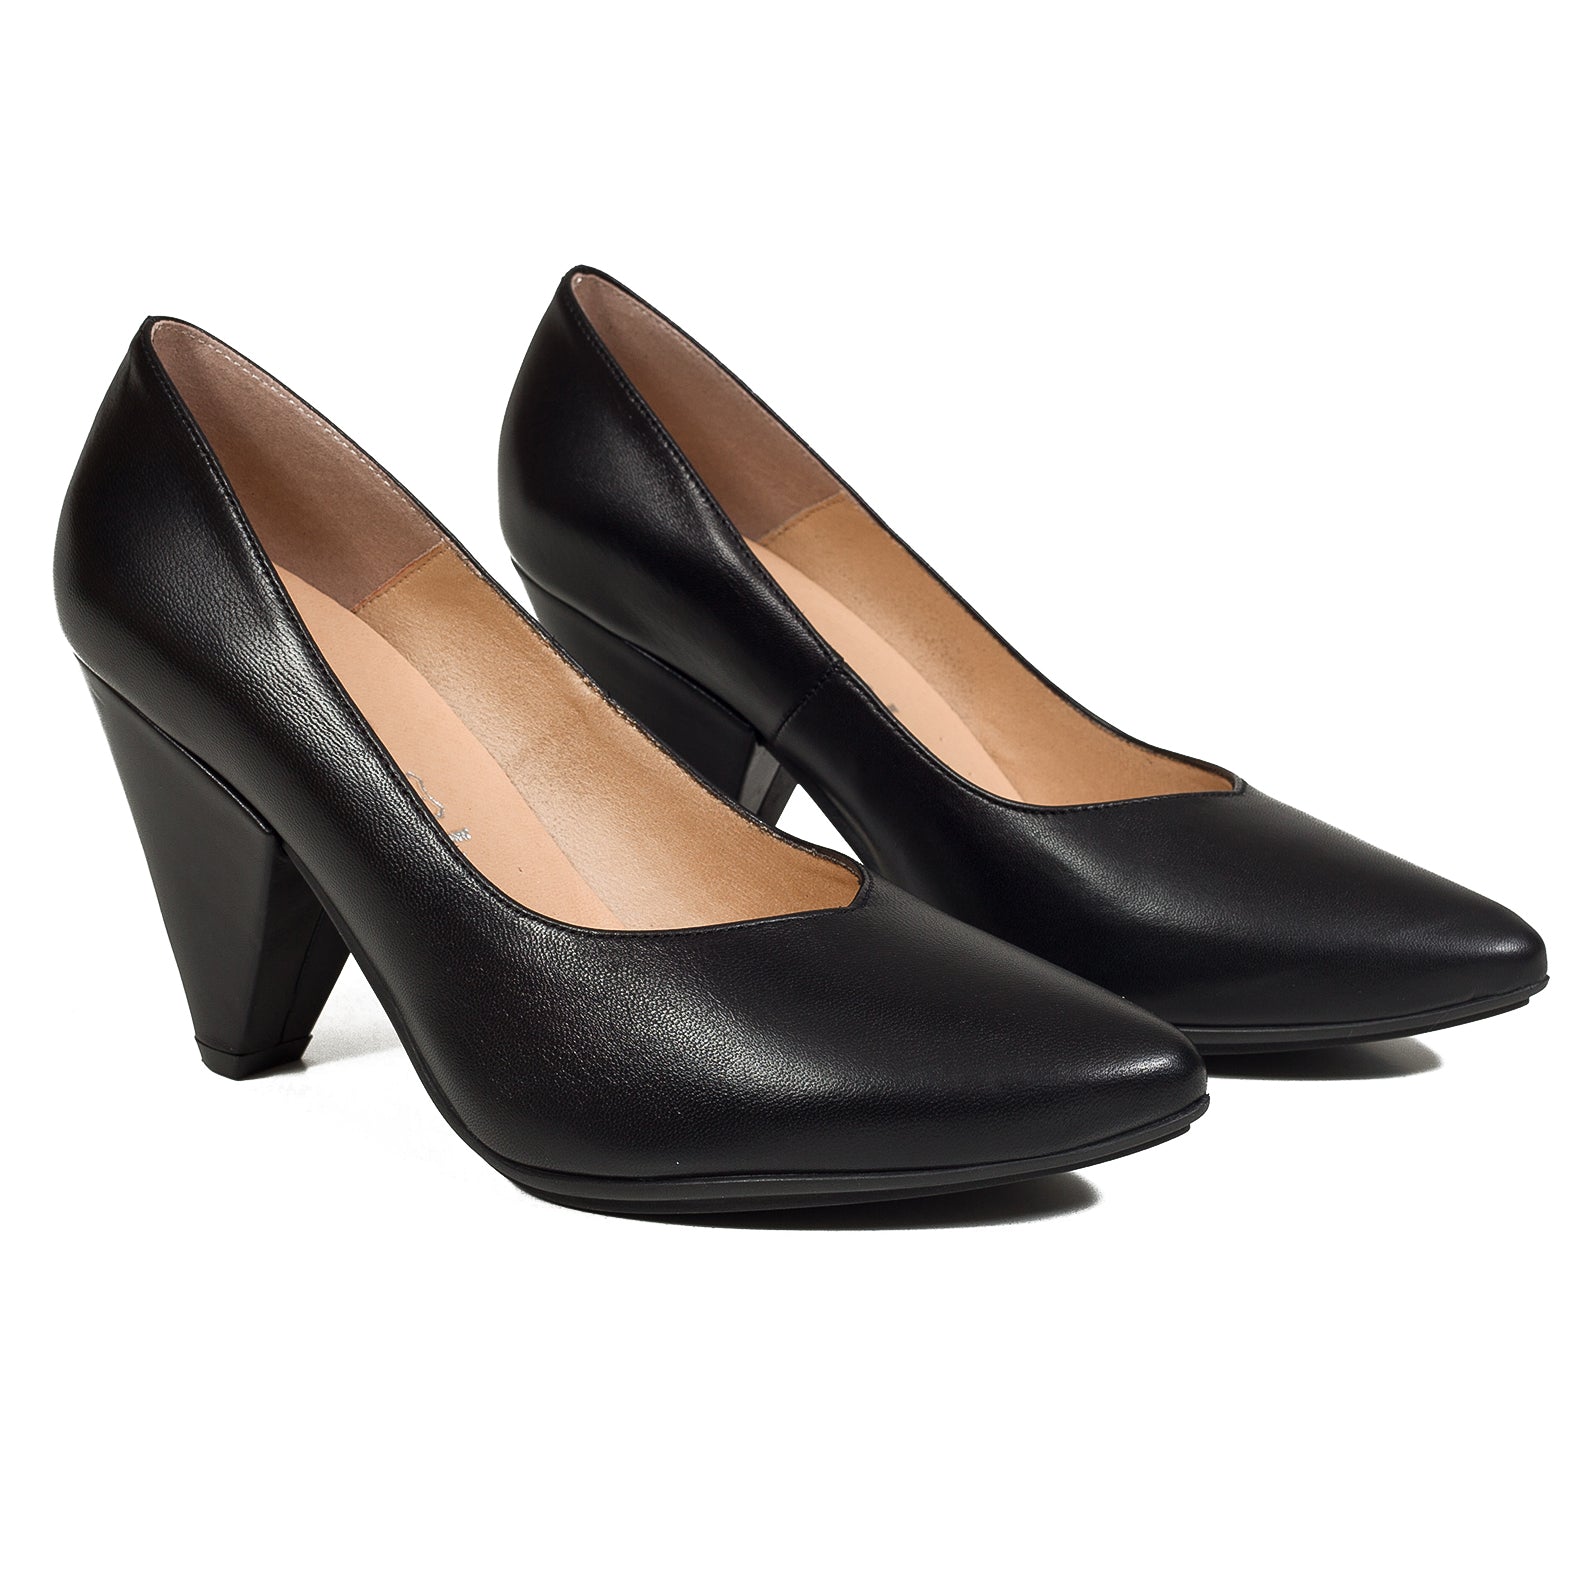 Zapatos de salón Mujer Color Negro, Hechos de Piel, Disponibles Desde  Talla 36 hasta Talla 41